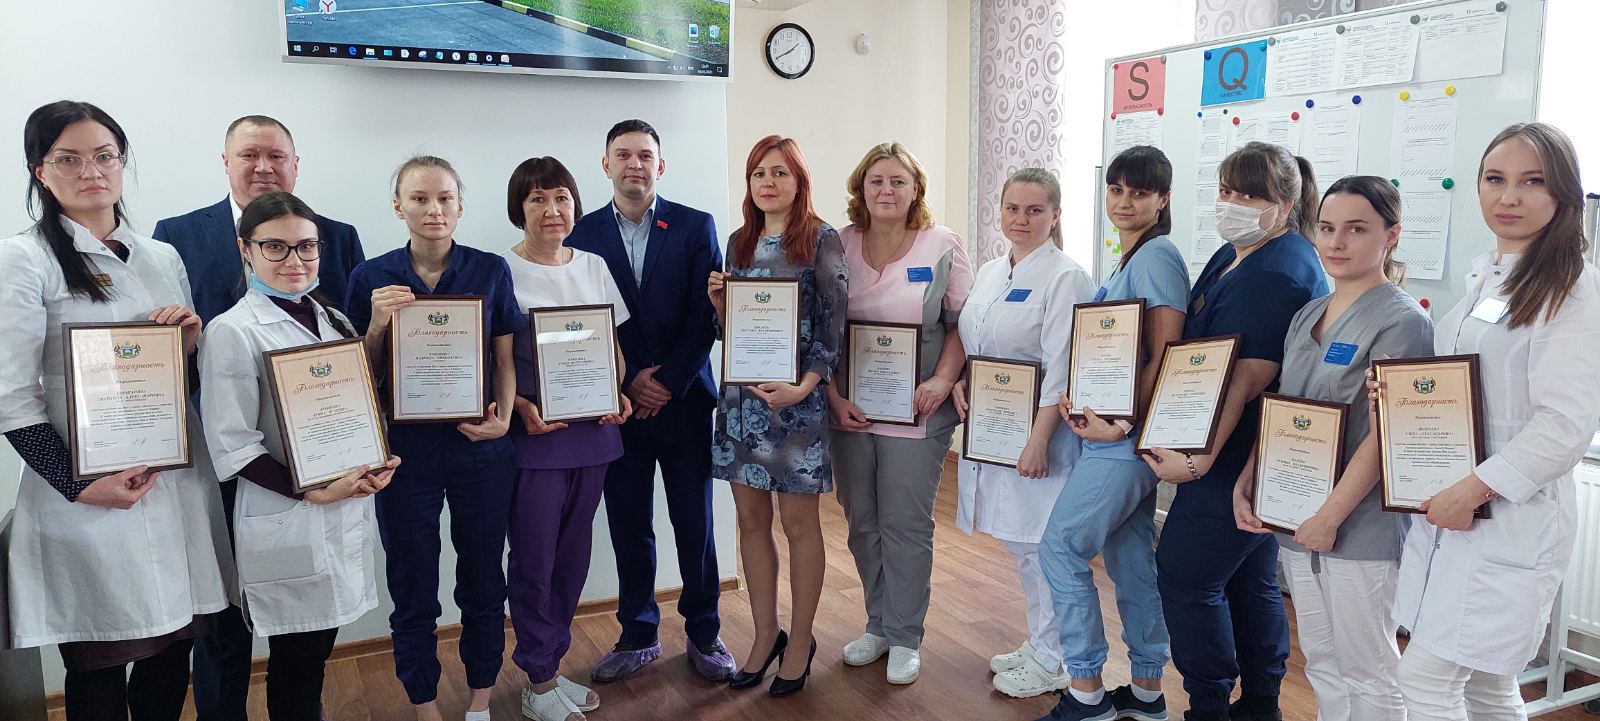 Активисты КПРФ поздравили трудовой коллектив городской поликлиники №17